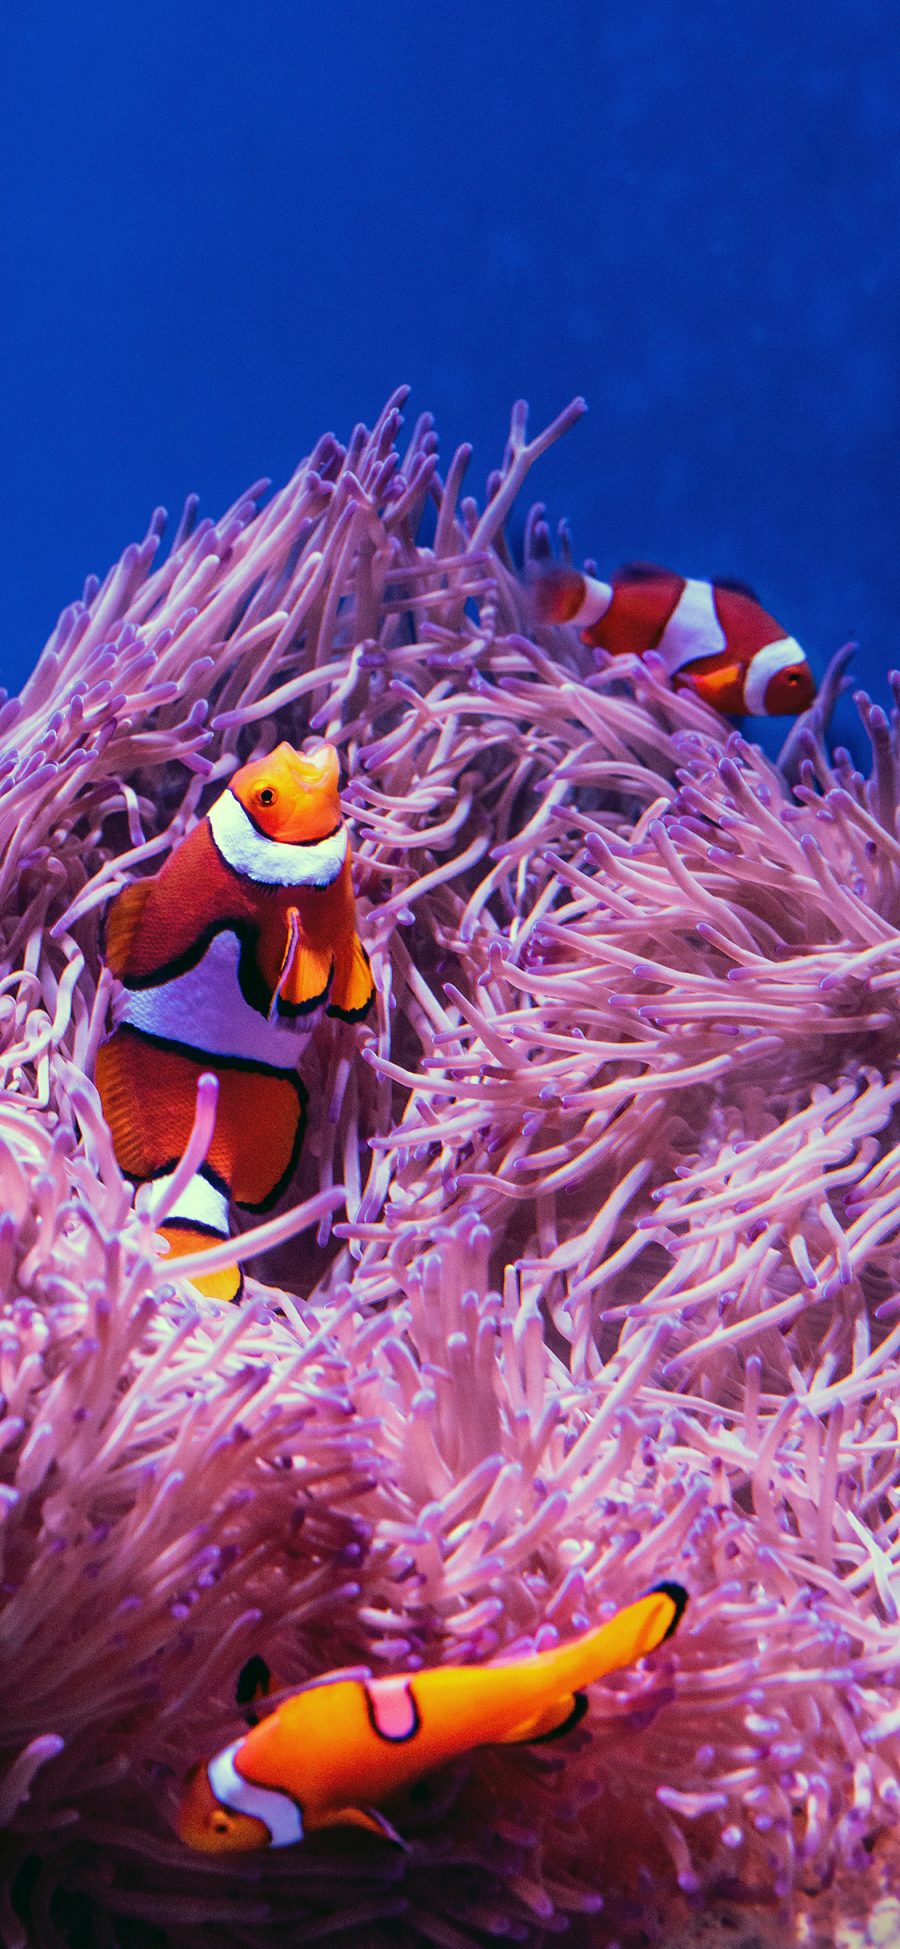 [2436×1125]珊瑚 海底 小丑鱼 珊瑚虫 苹果手机壁纸图片